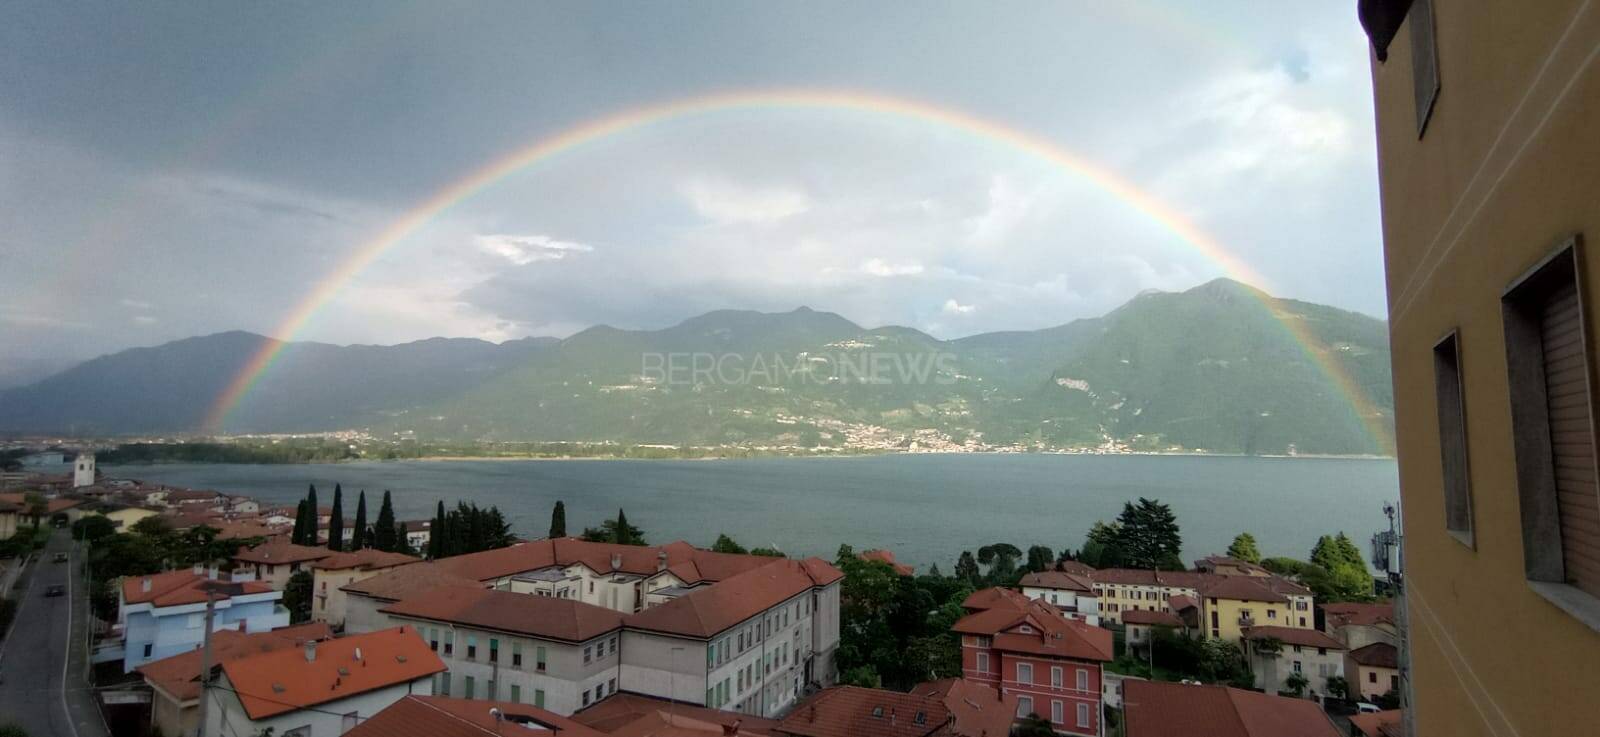 lovere arcobaleno (Foto Claudia Depari)